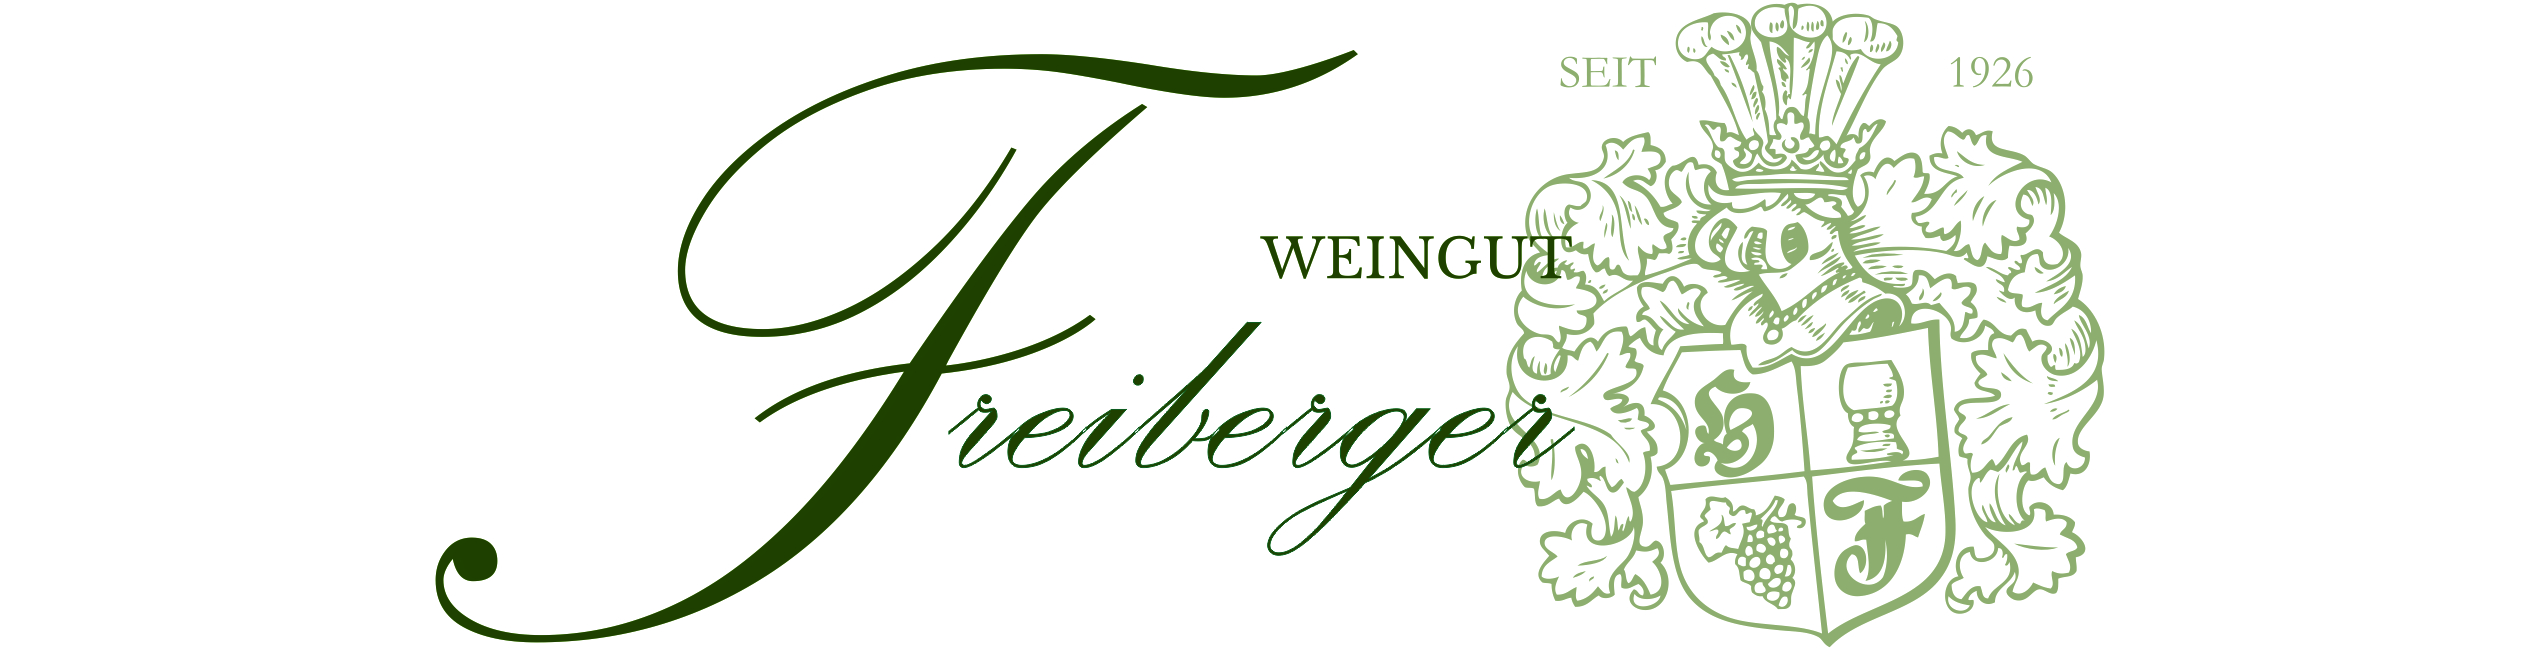 Weingut Freiberger